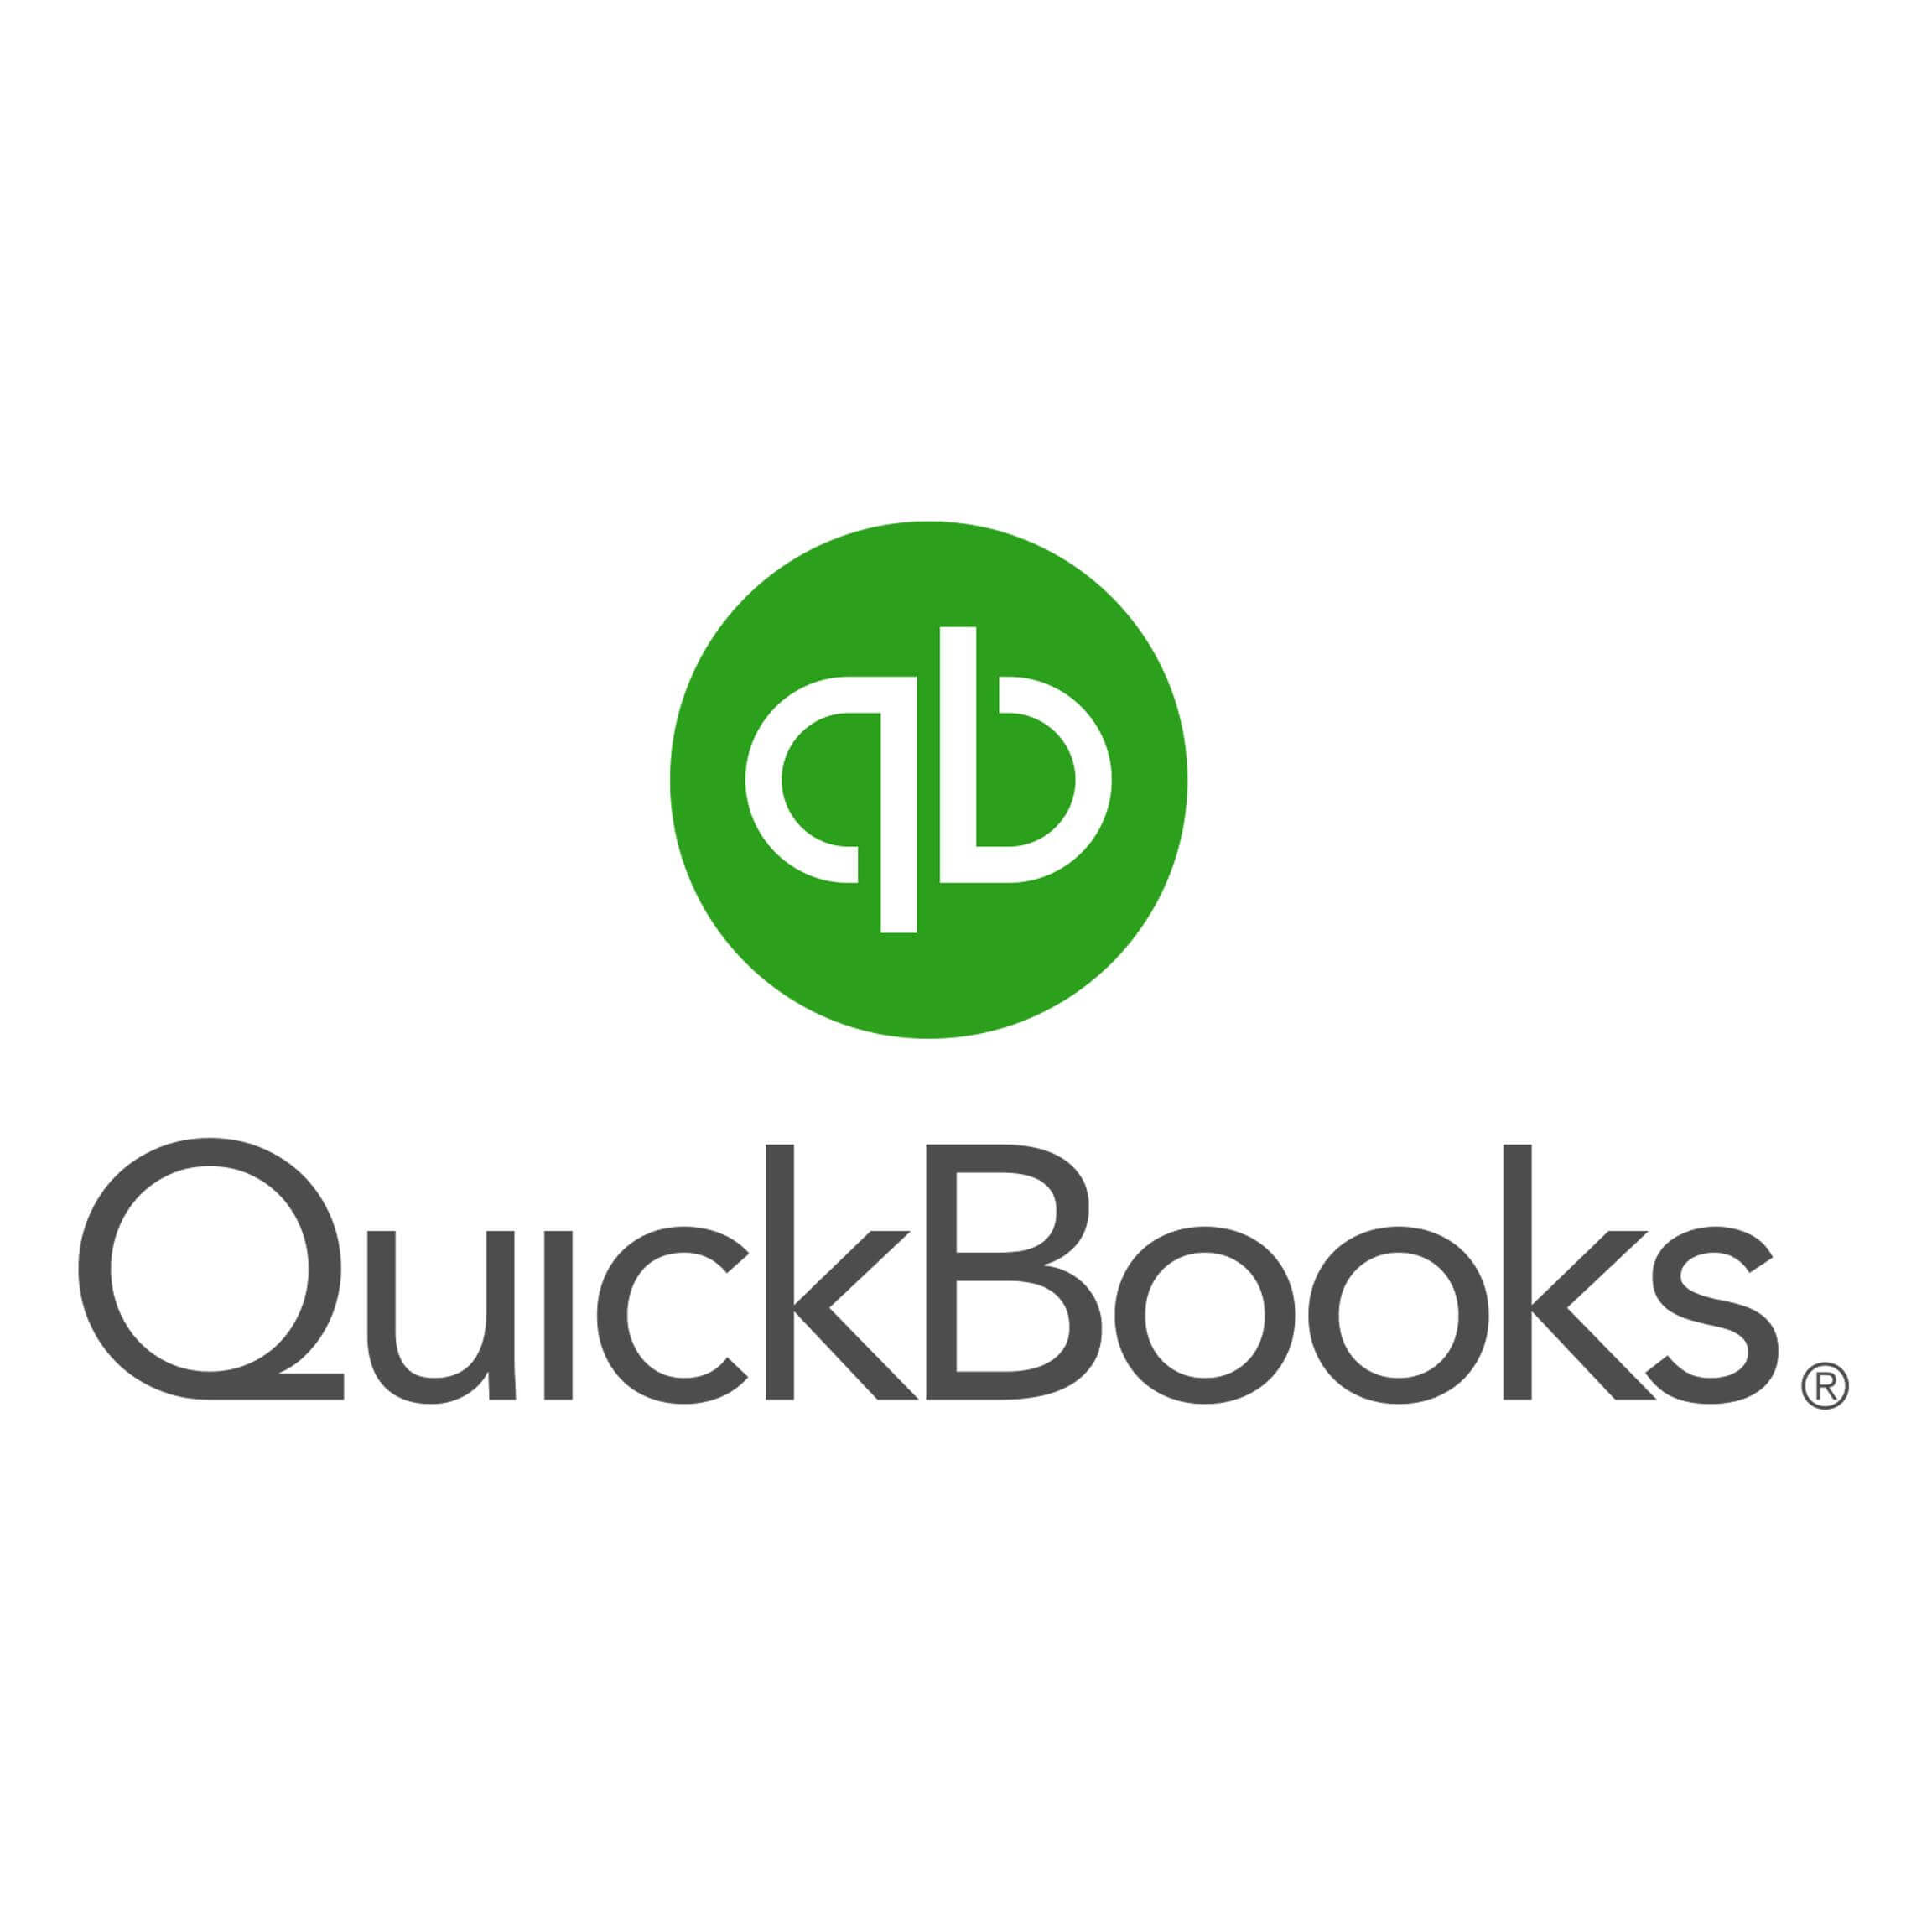 Quickbooks - Complete Controller